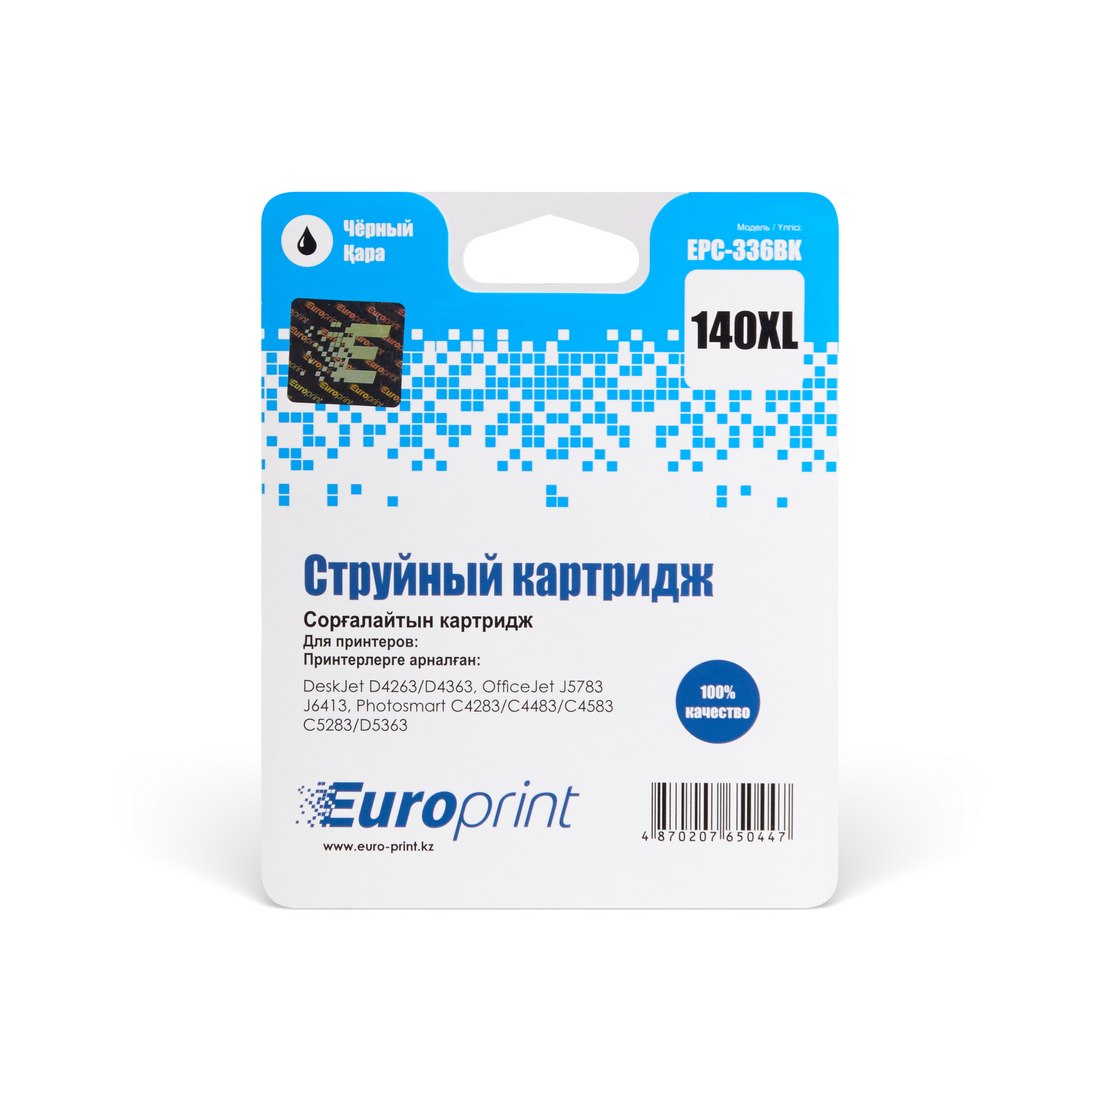 Картридж Europrint EPC-336BK (№140xl) - истек срок годности